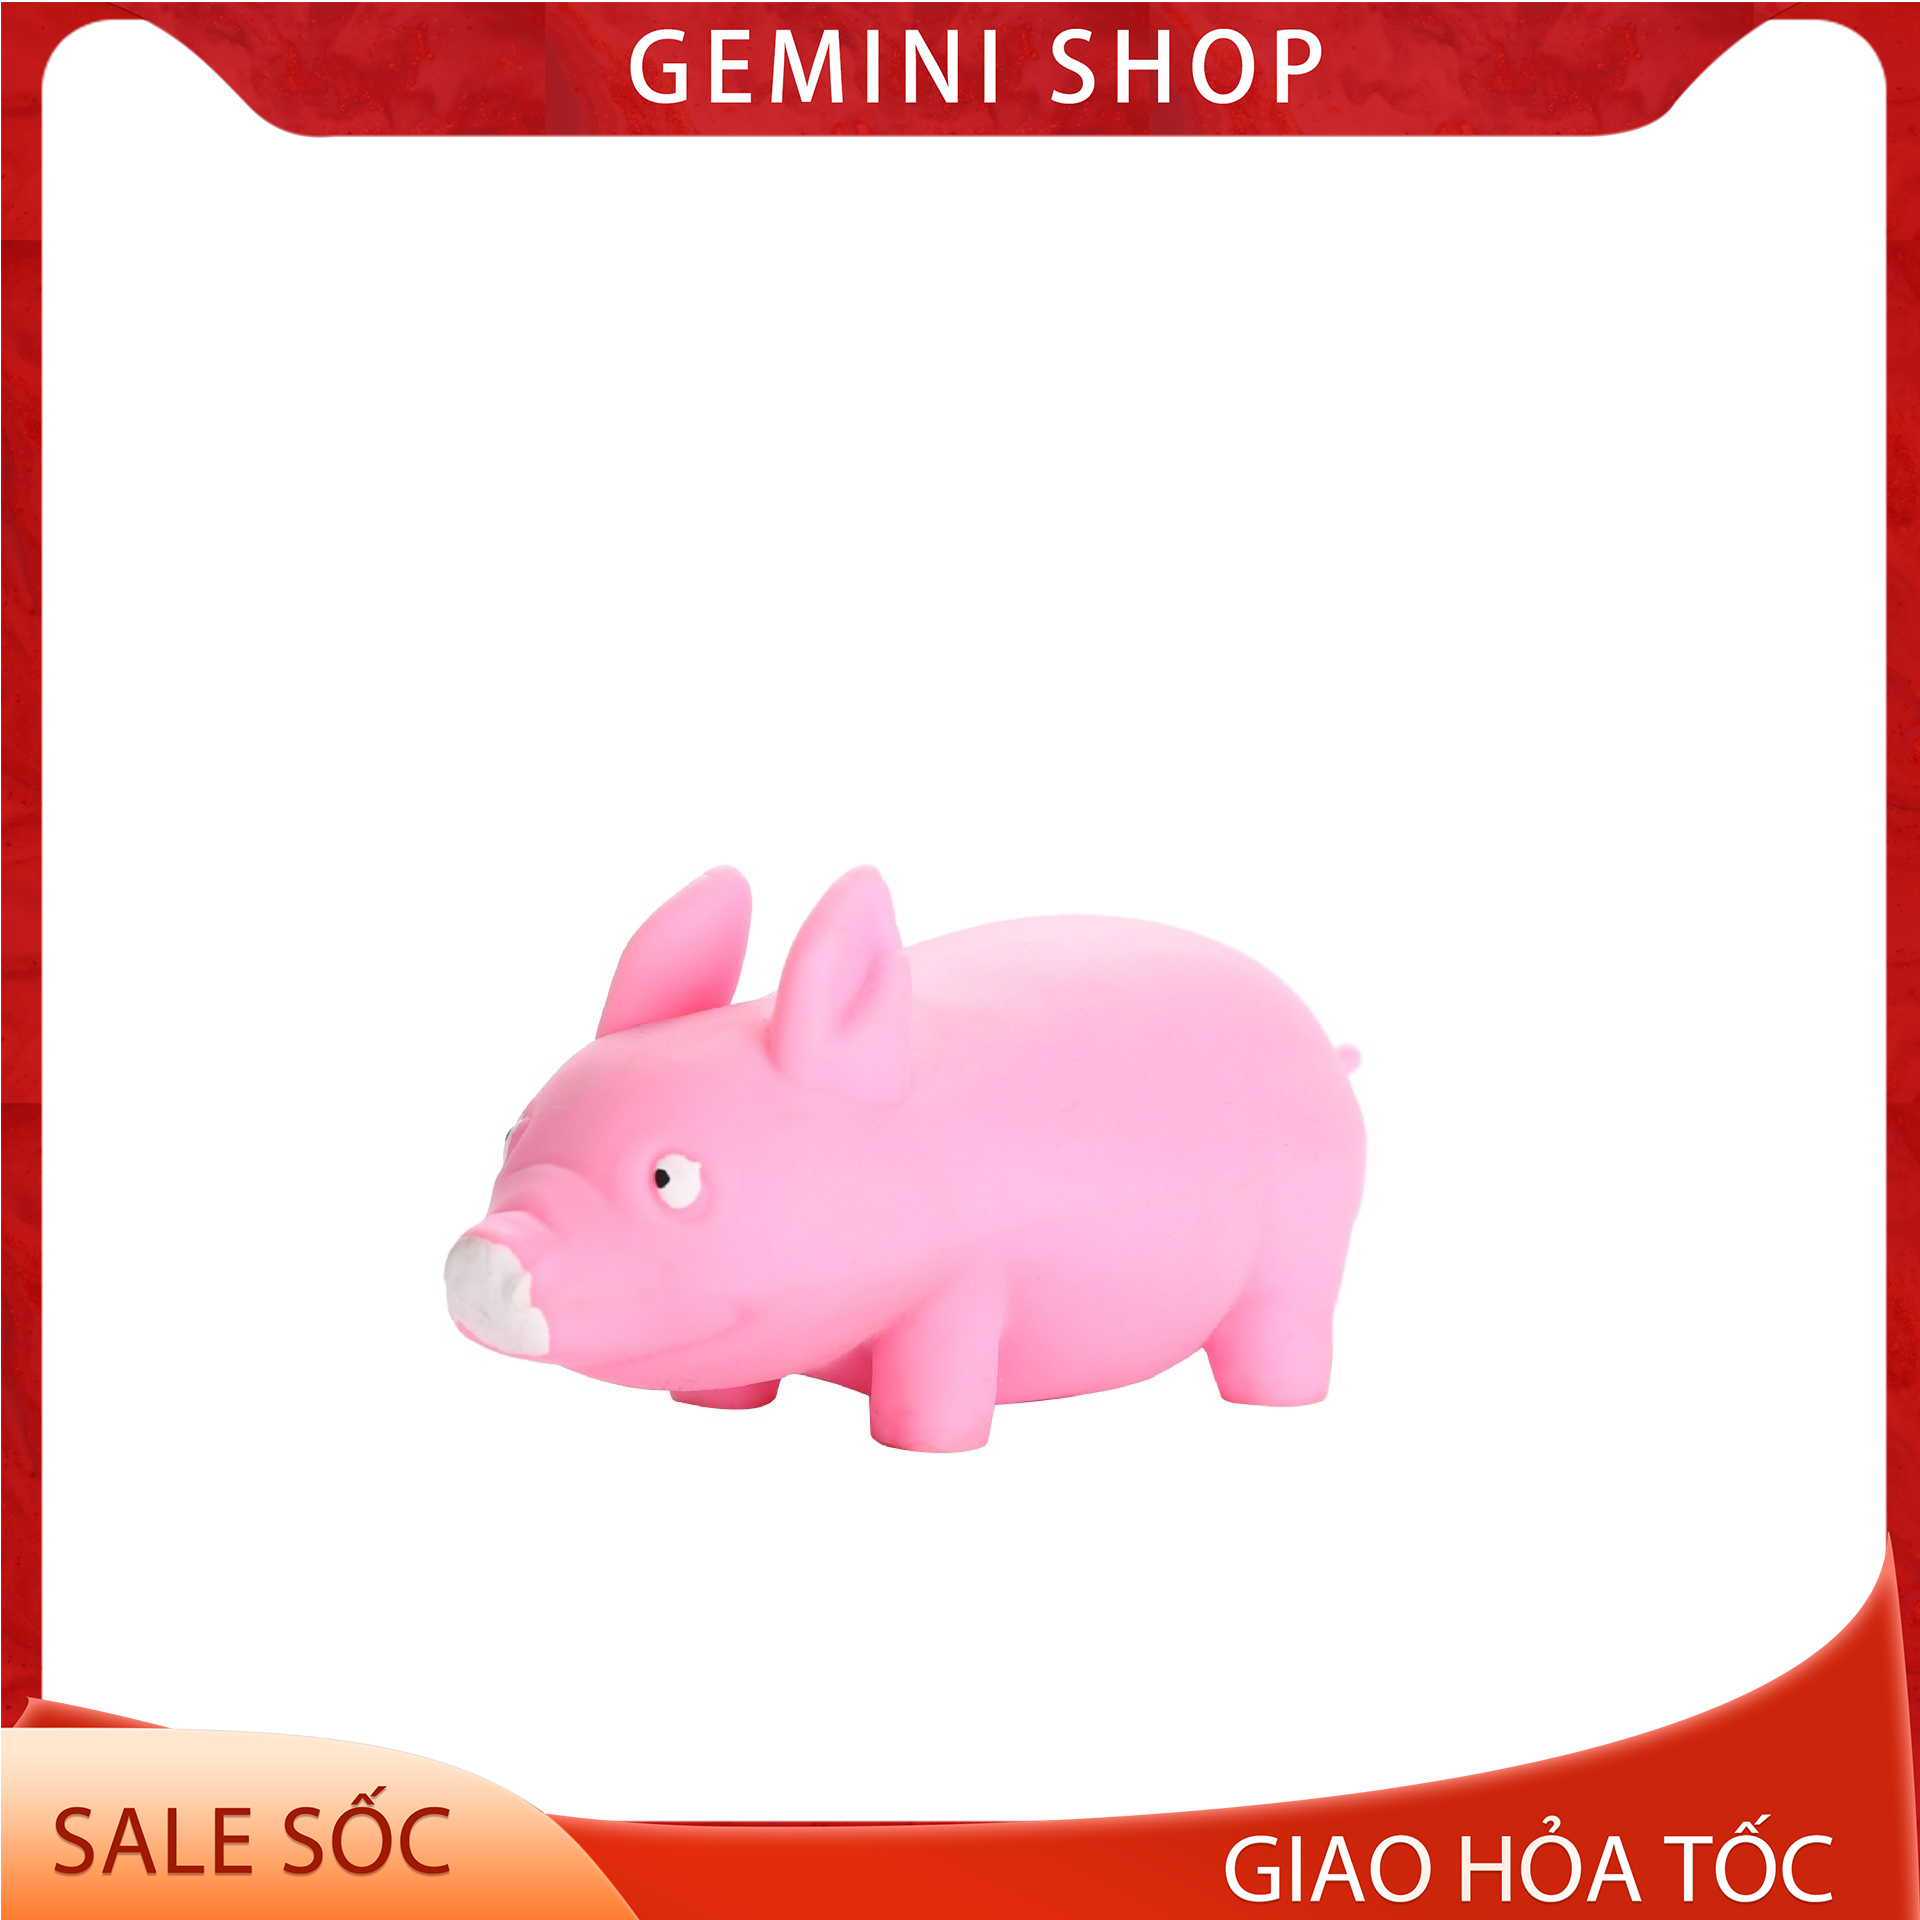 Đồ Chơi Con Lợn Heo Hồng Bằng Nhựa Dẻo Xả Stress Dễ Thương Mang Lại Niềm  Vui Cho Người Sử Dụng Gemini Shop Mã Hd1 | Lazada.Vn